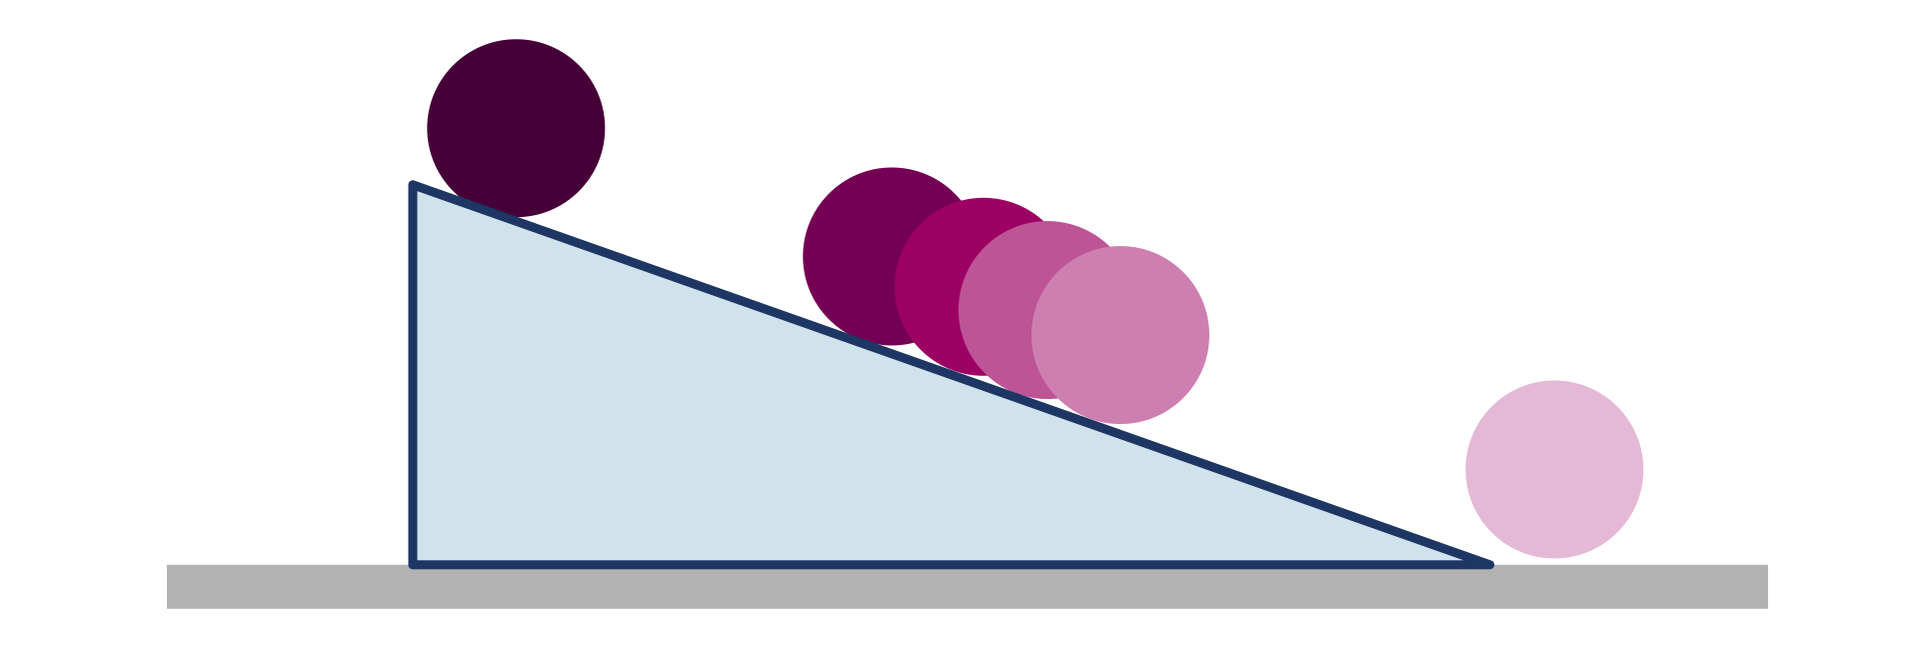 Rysunek przedstawia równię pochyłą, na której znajduje się walec. Przekrój z boku. Równia jest trójkątem prostokątnym, walec kółkiem. Przedstawiono walec na górze równi, na jej środku i na dole. Im większa prędkość tym walec staje się bledszy.